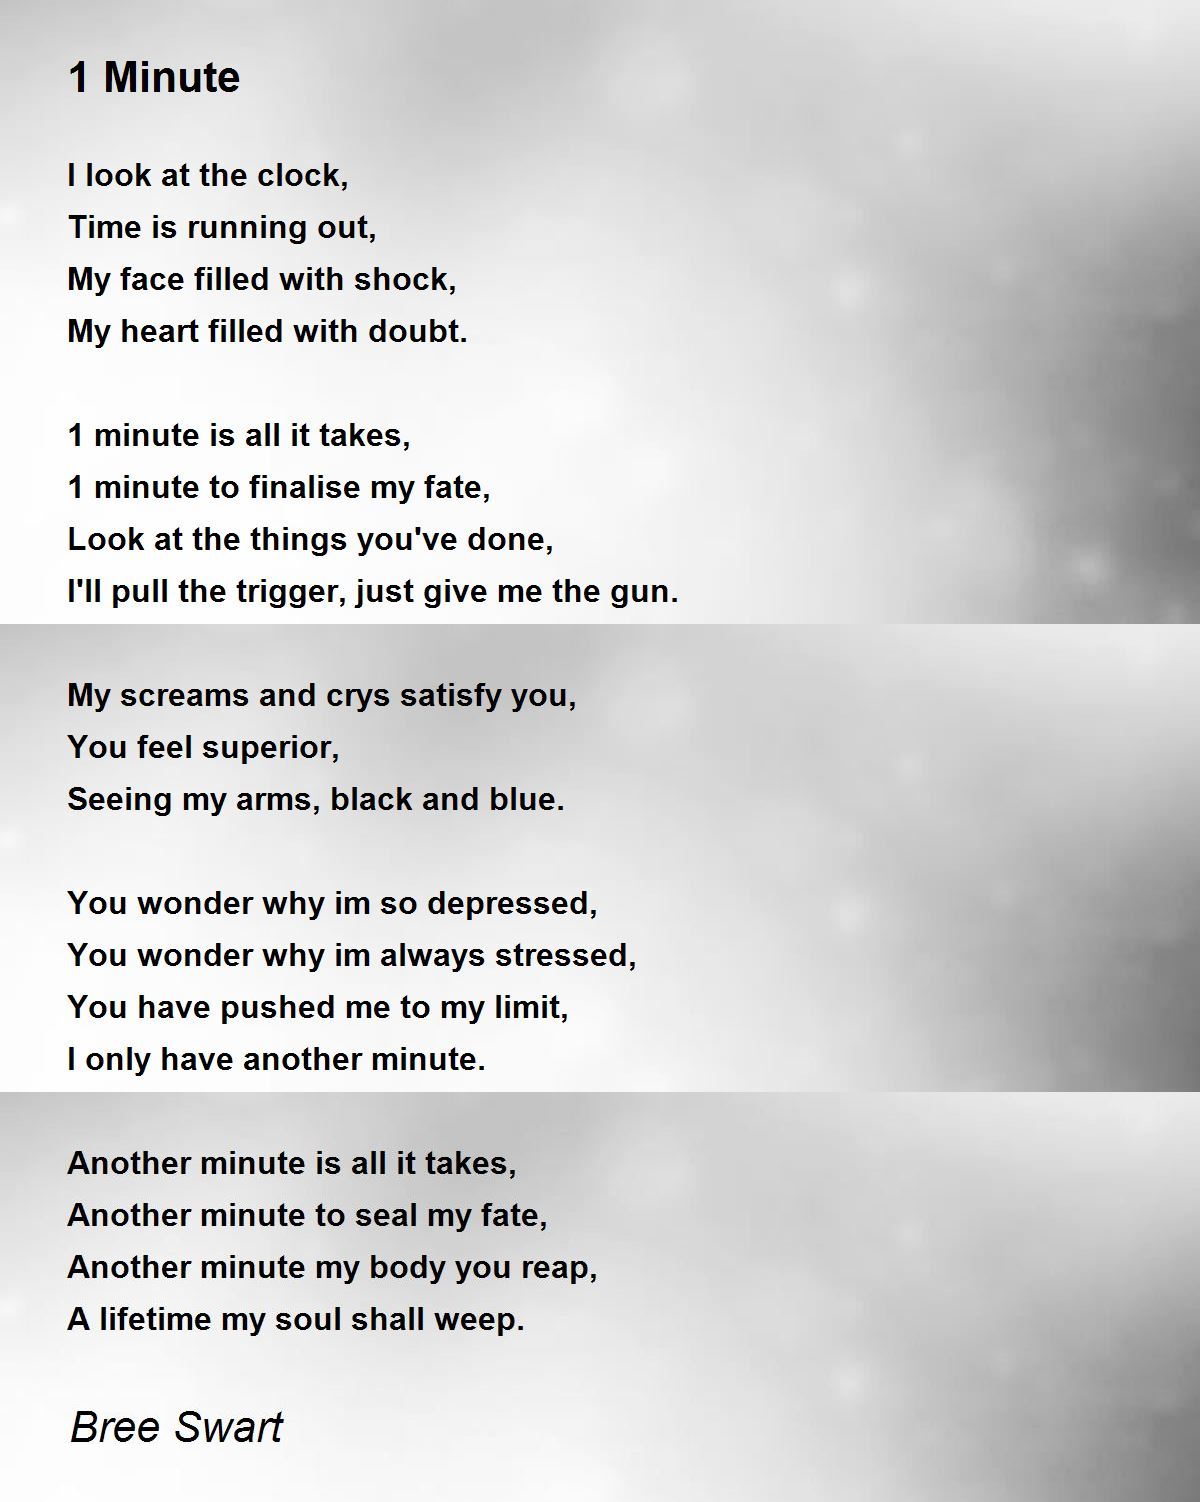 1 Minute Poem By Bree Swart